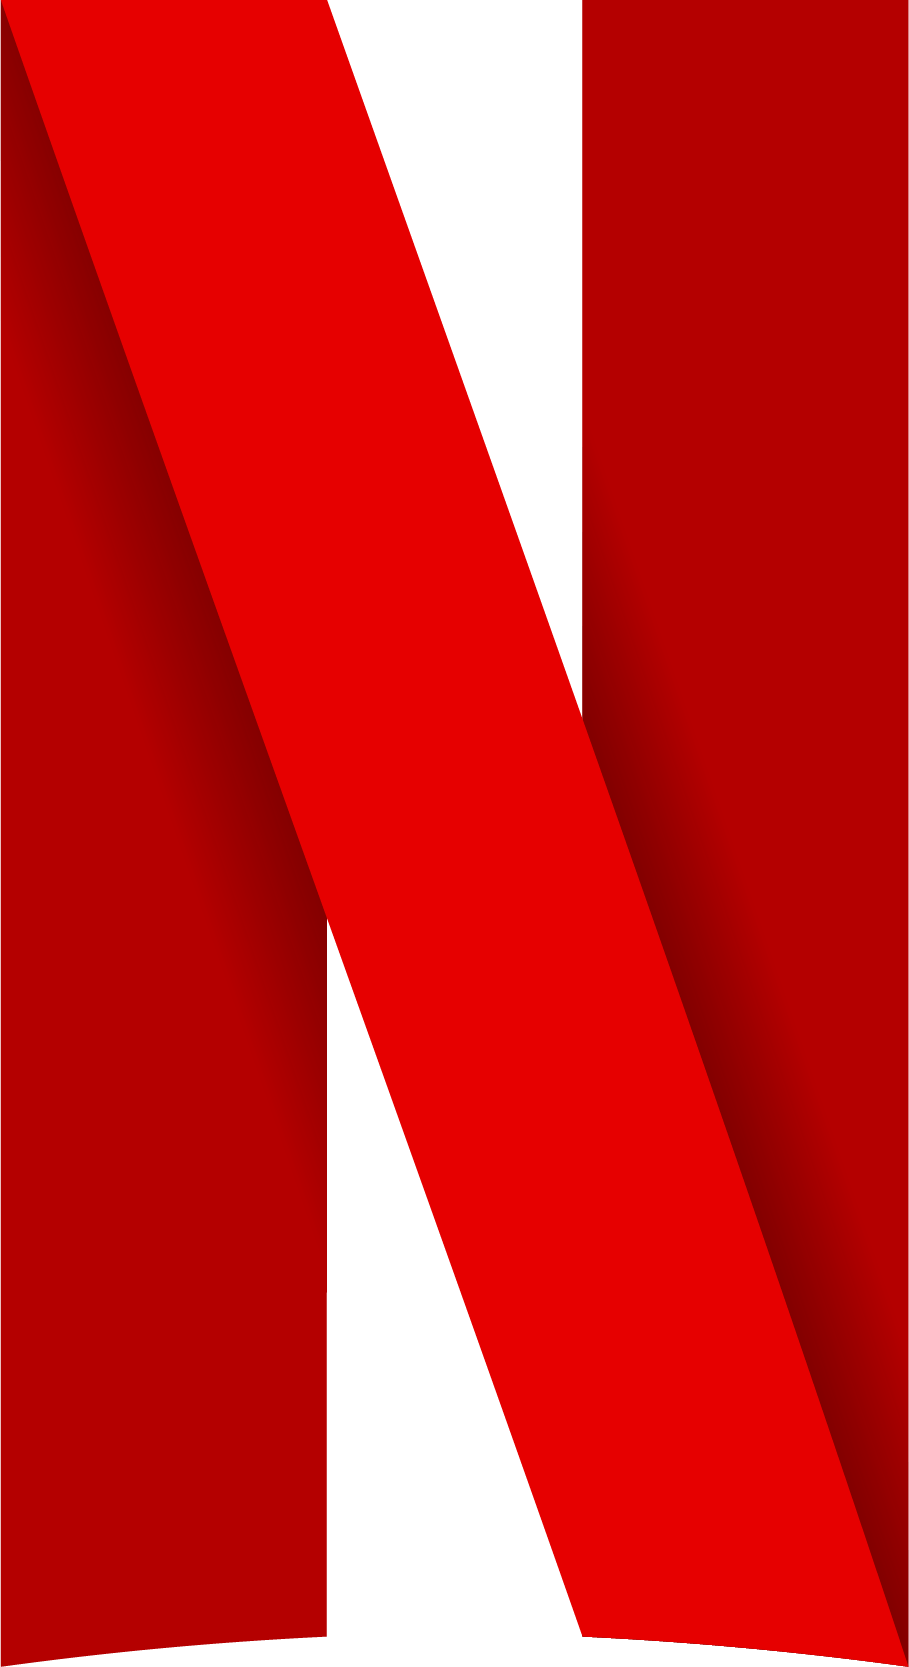 Netflix | Logopedia | FANDOM powered by Wikia